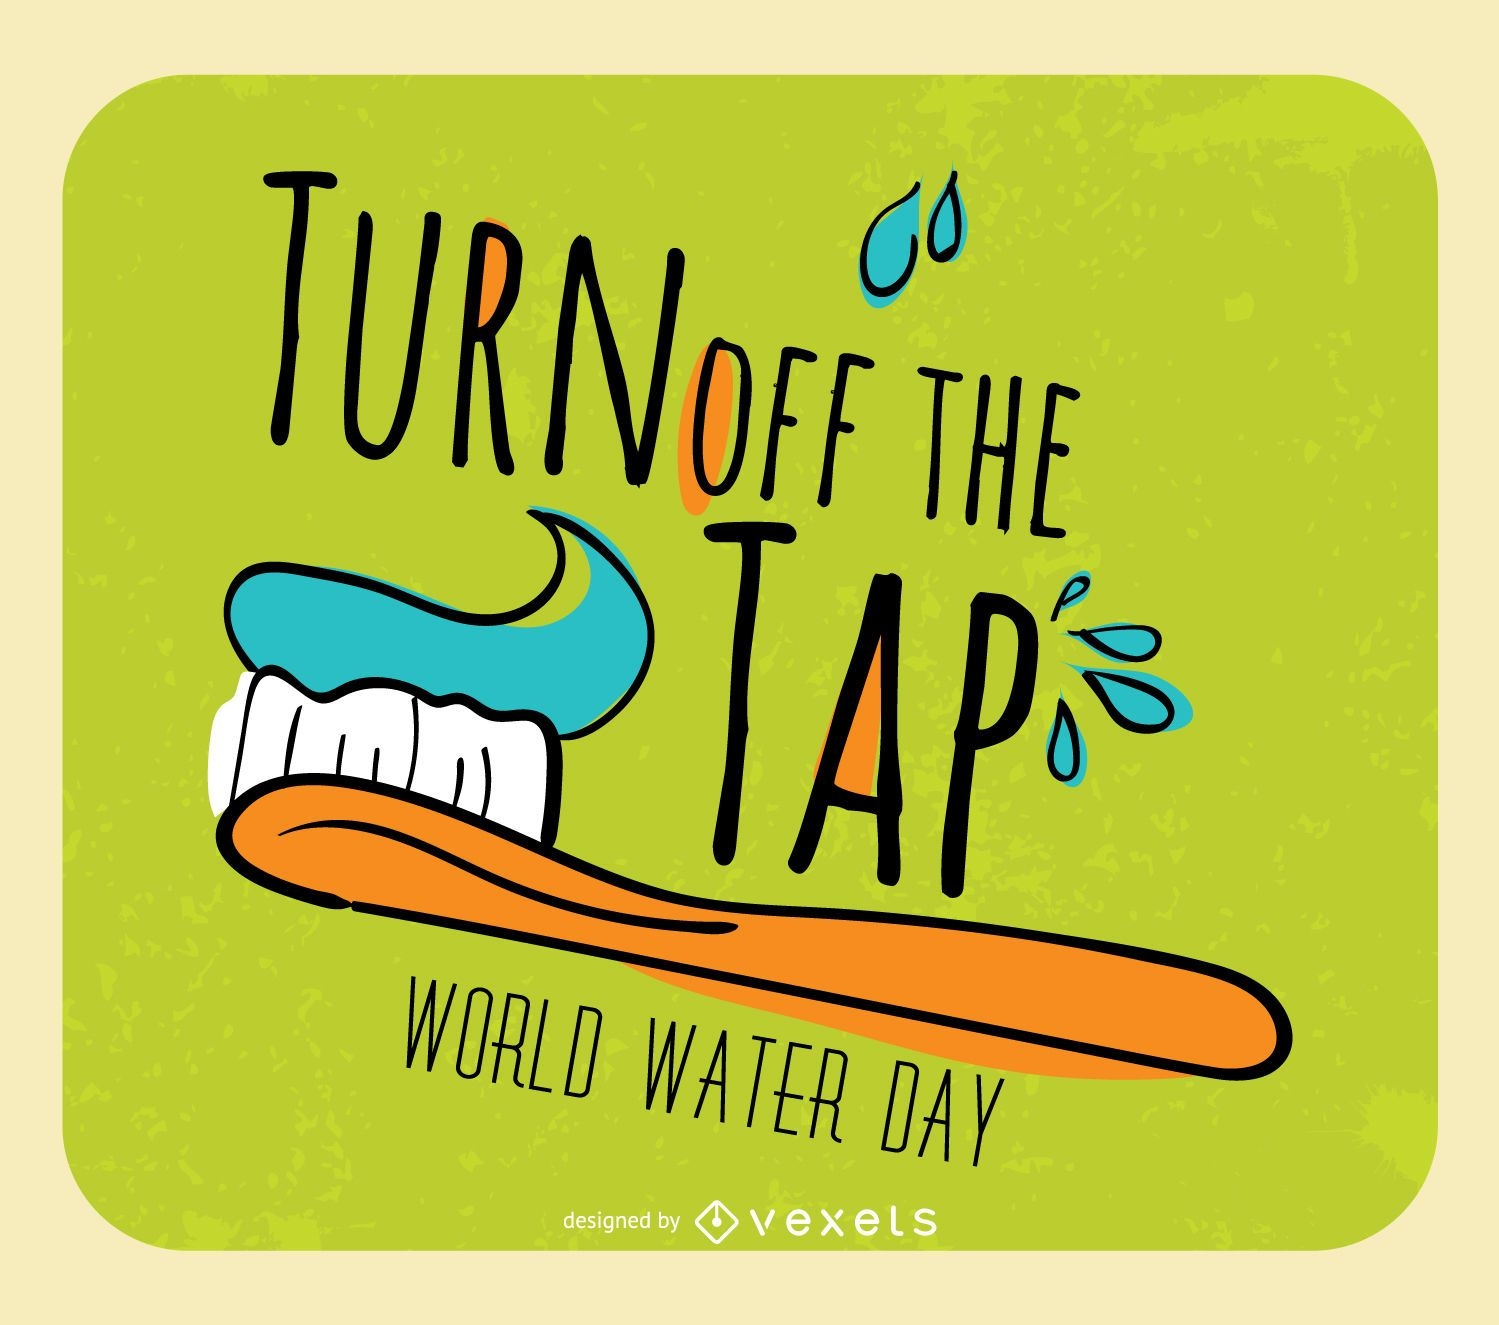 D?a mundial del agua: cierre el grifo